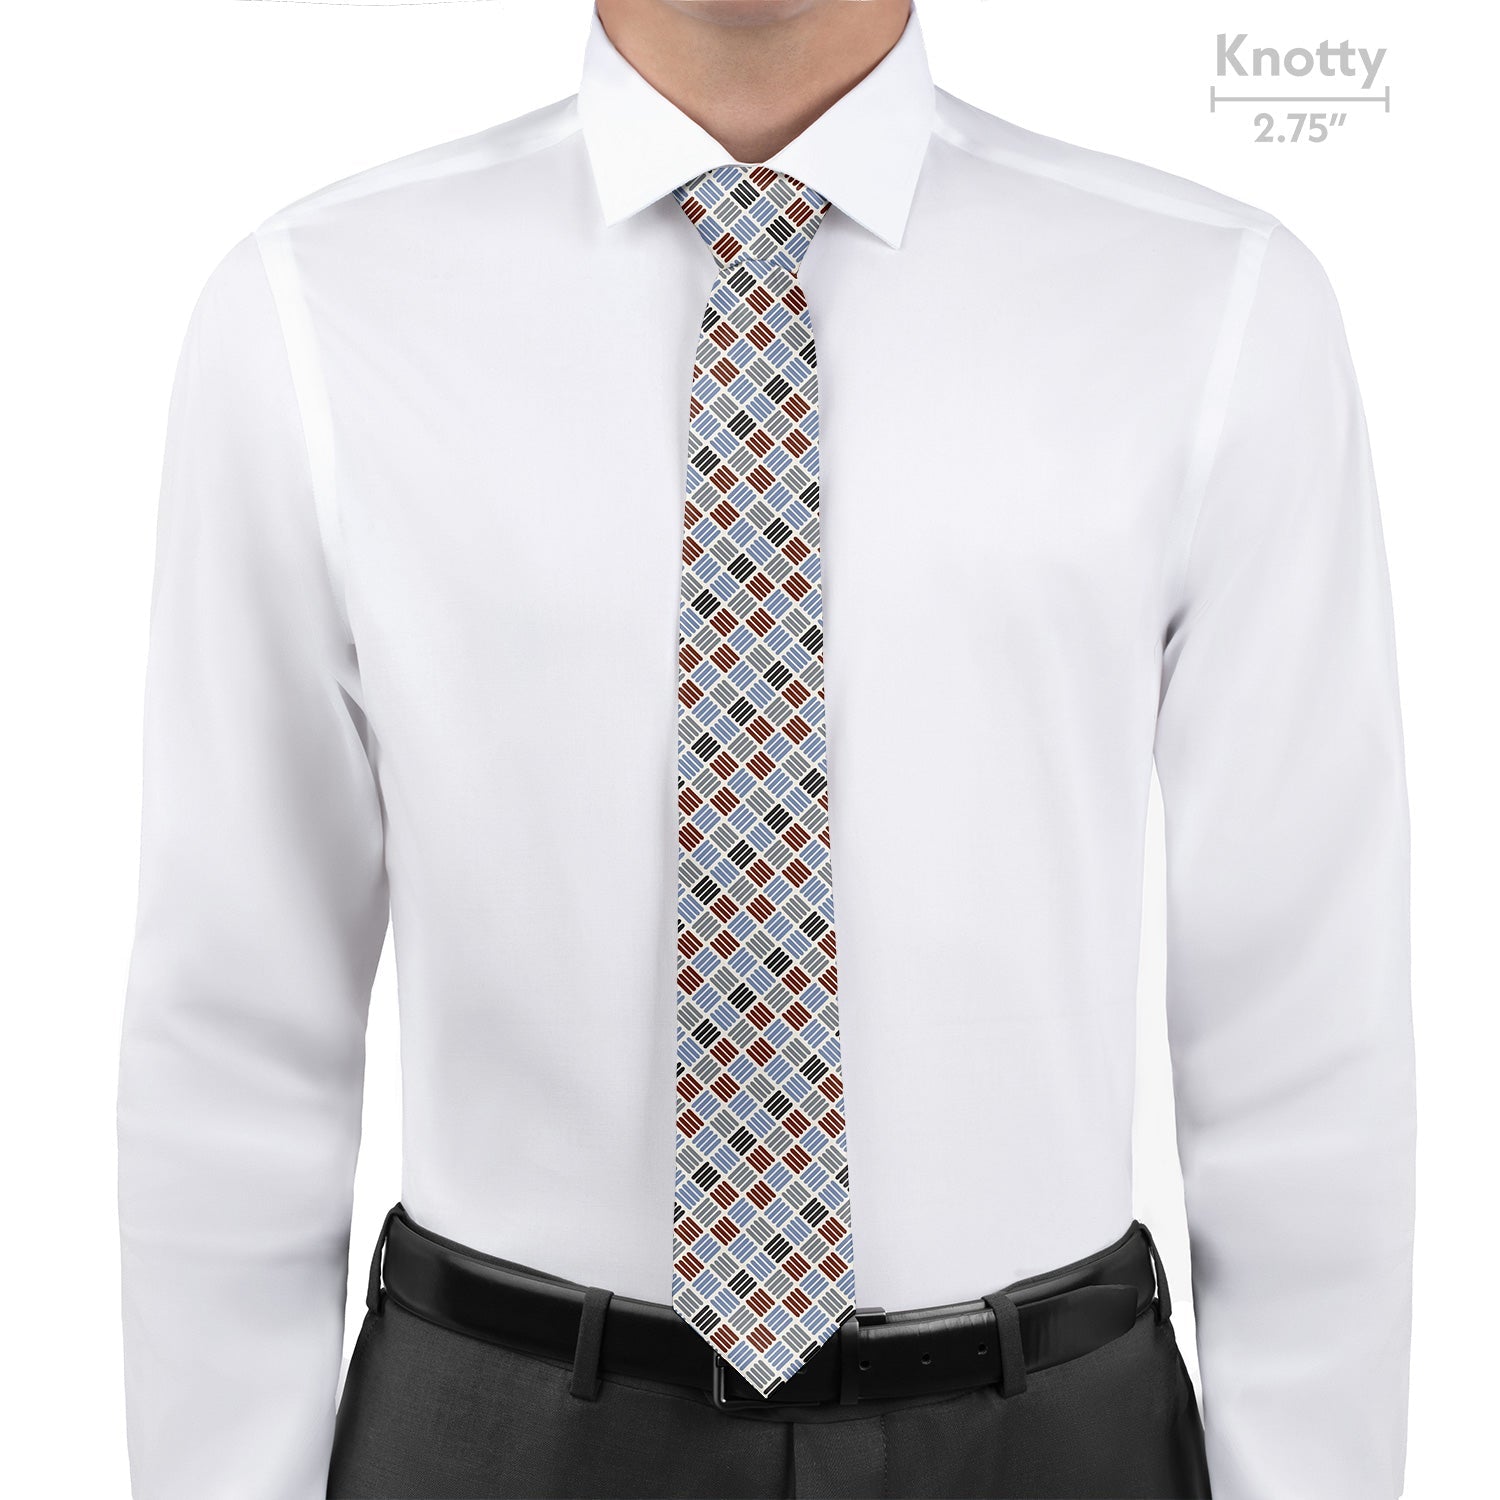 Crosshatch Plaid Necktie - Knotty - Knotty Tie Co.